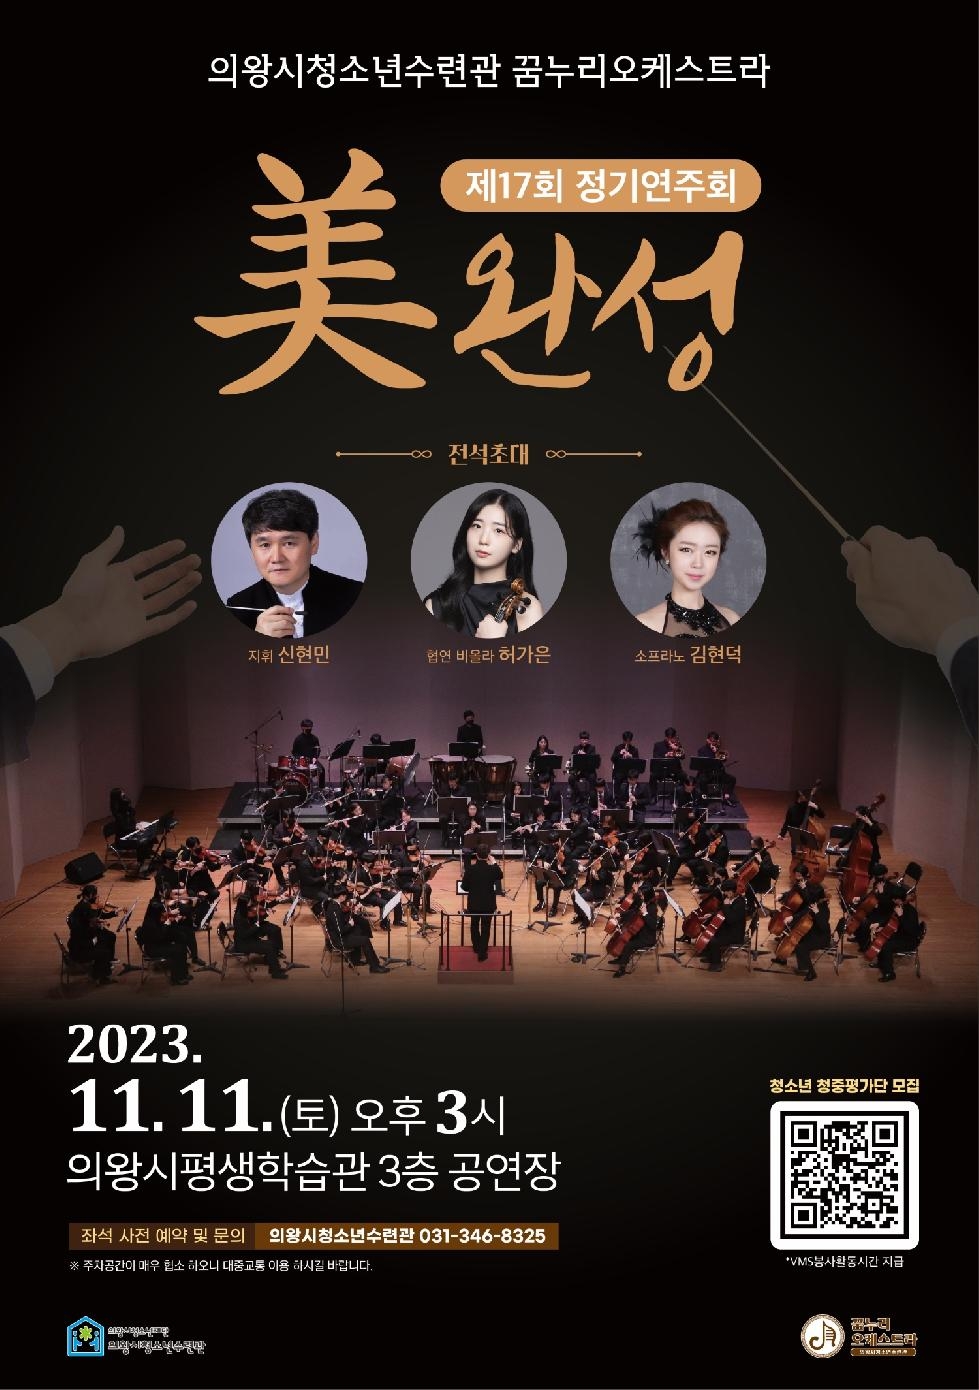 의왕시청소년수련관 꿈누리오케스트라  제17회 정기연주회‘美완성’개최